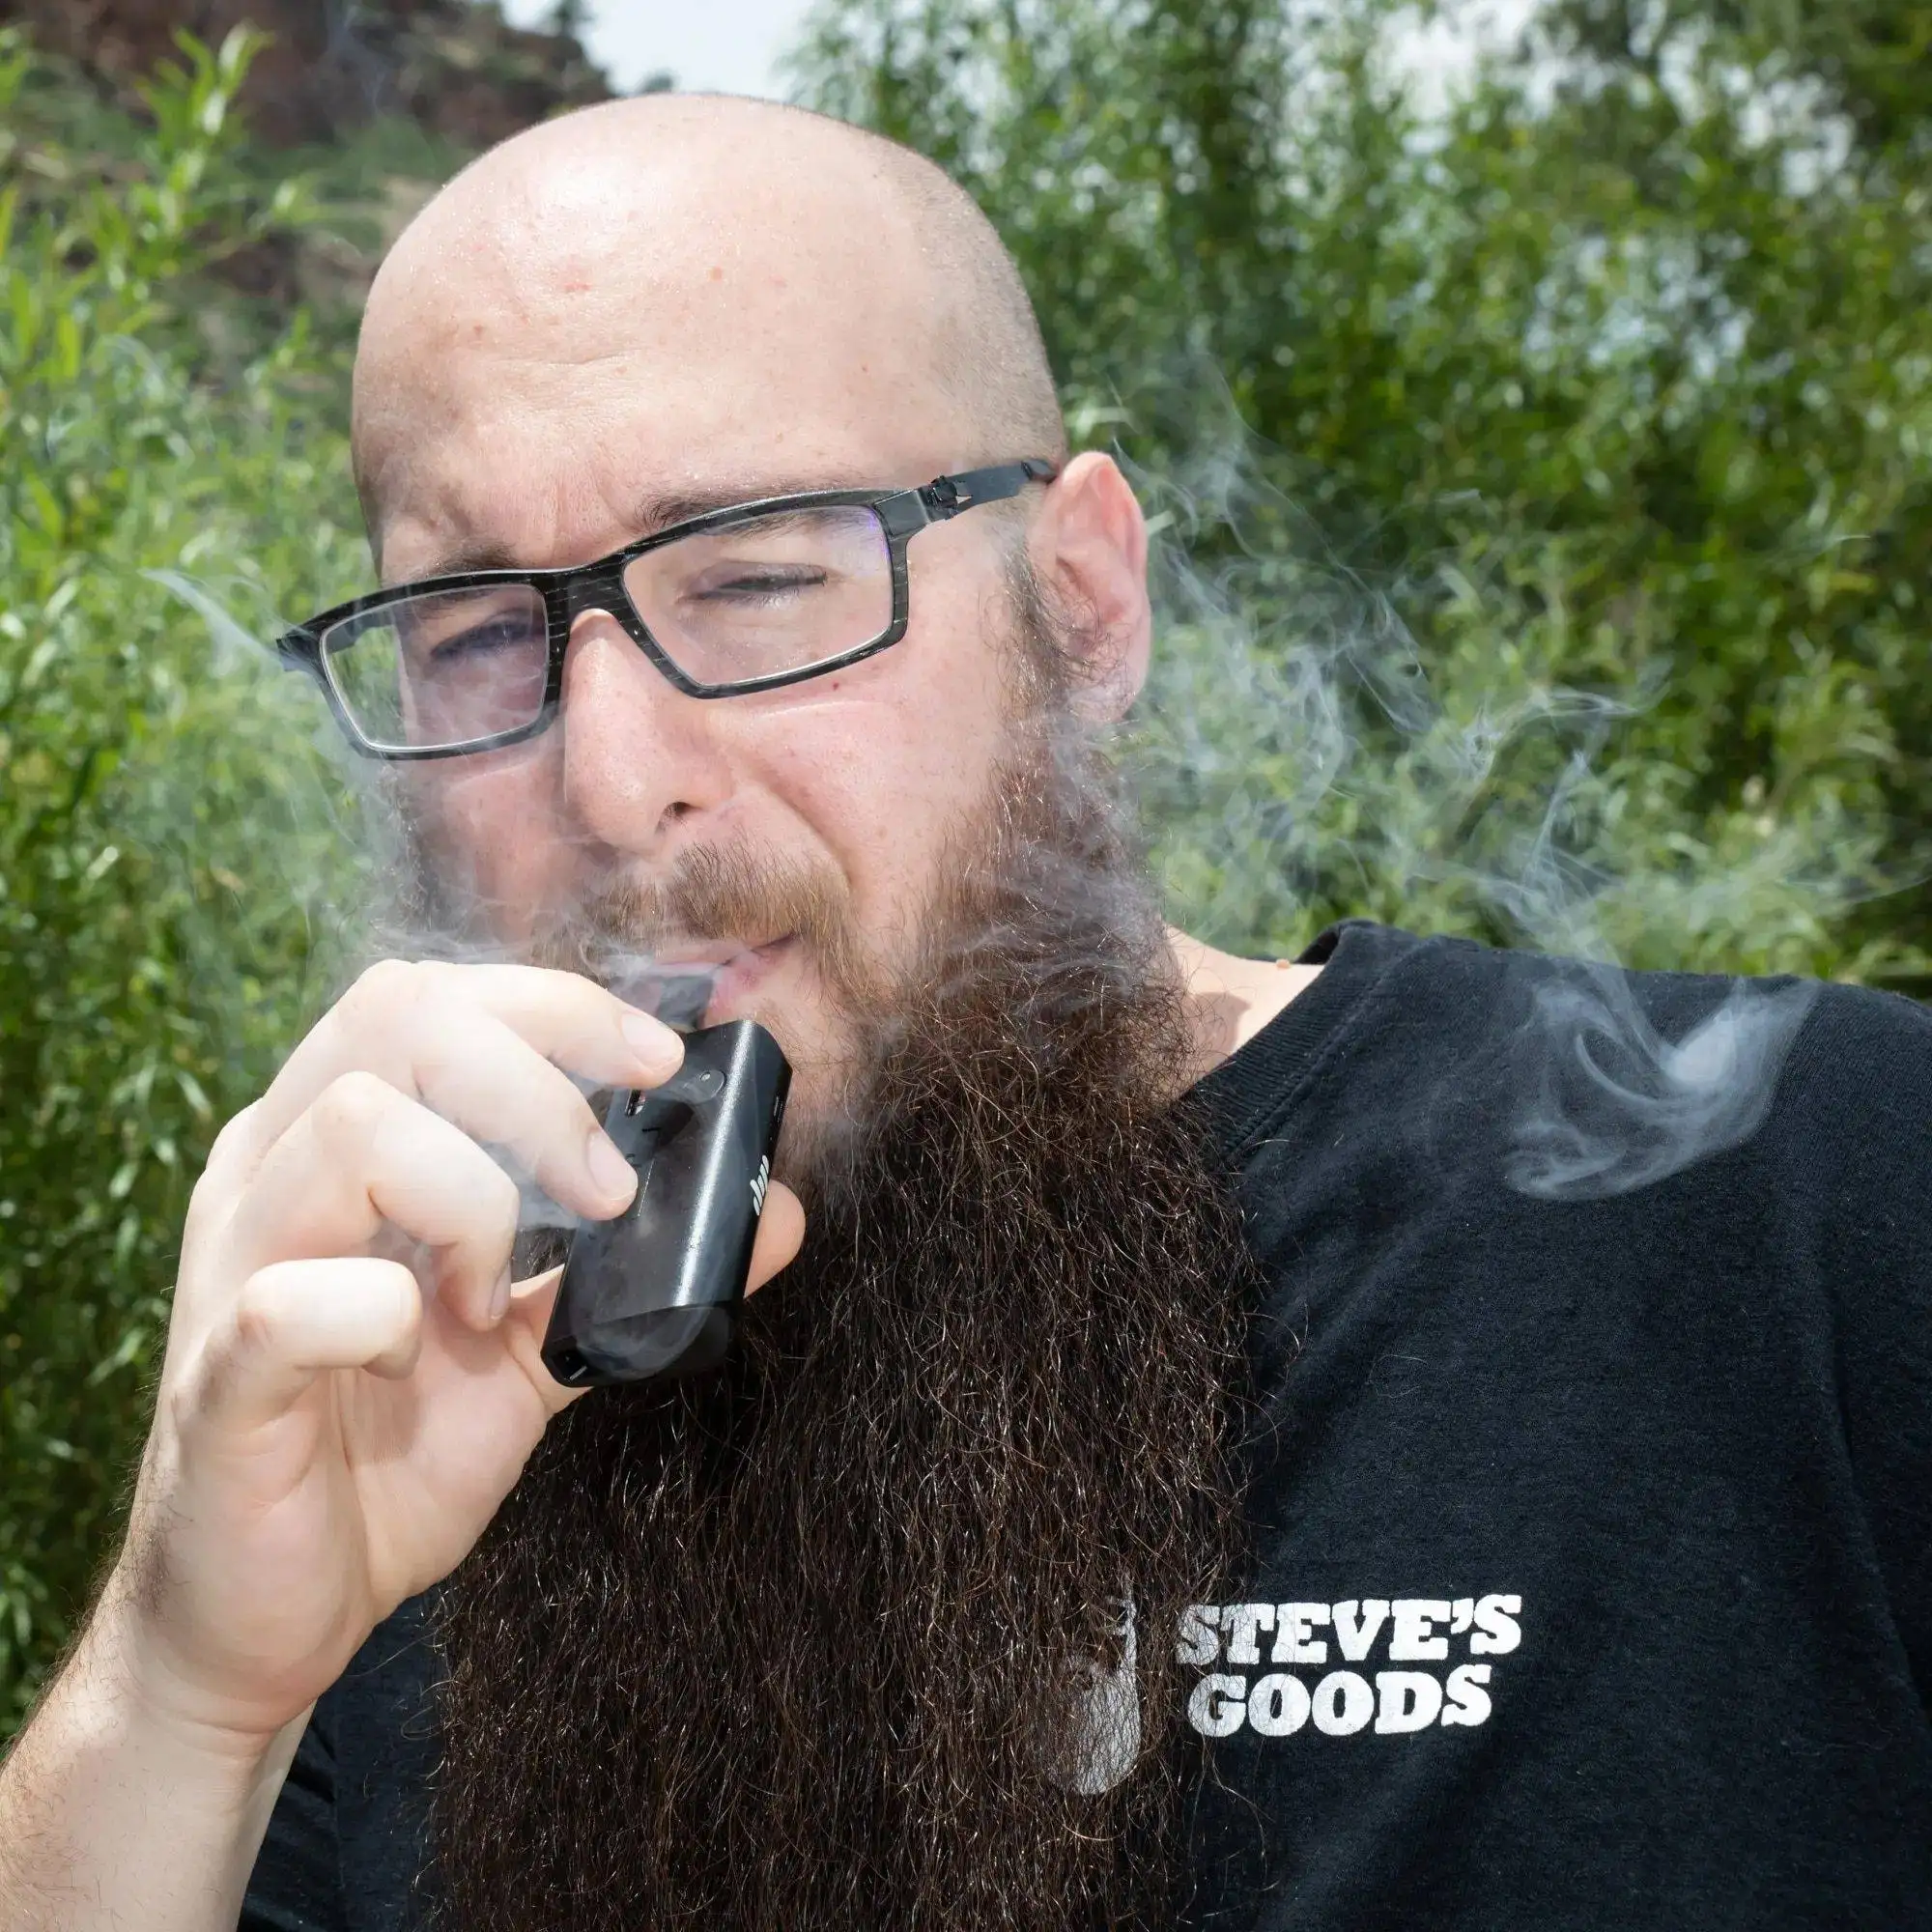 steve from Steve's Goods smoking a vape cartridge with a vape pen